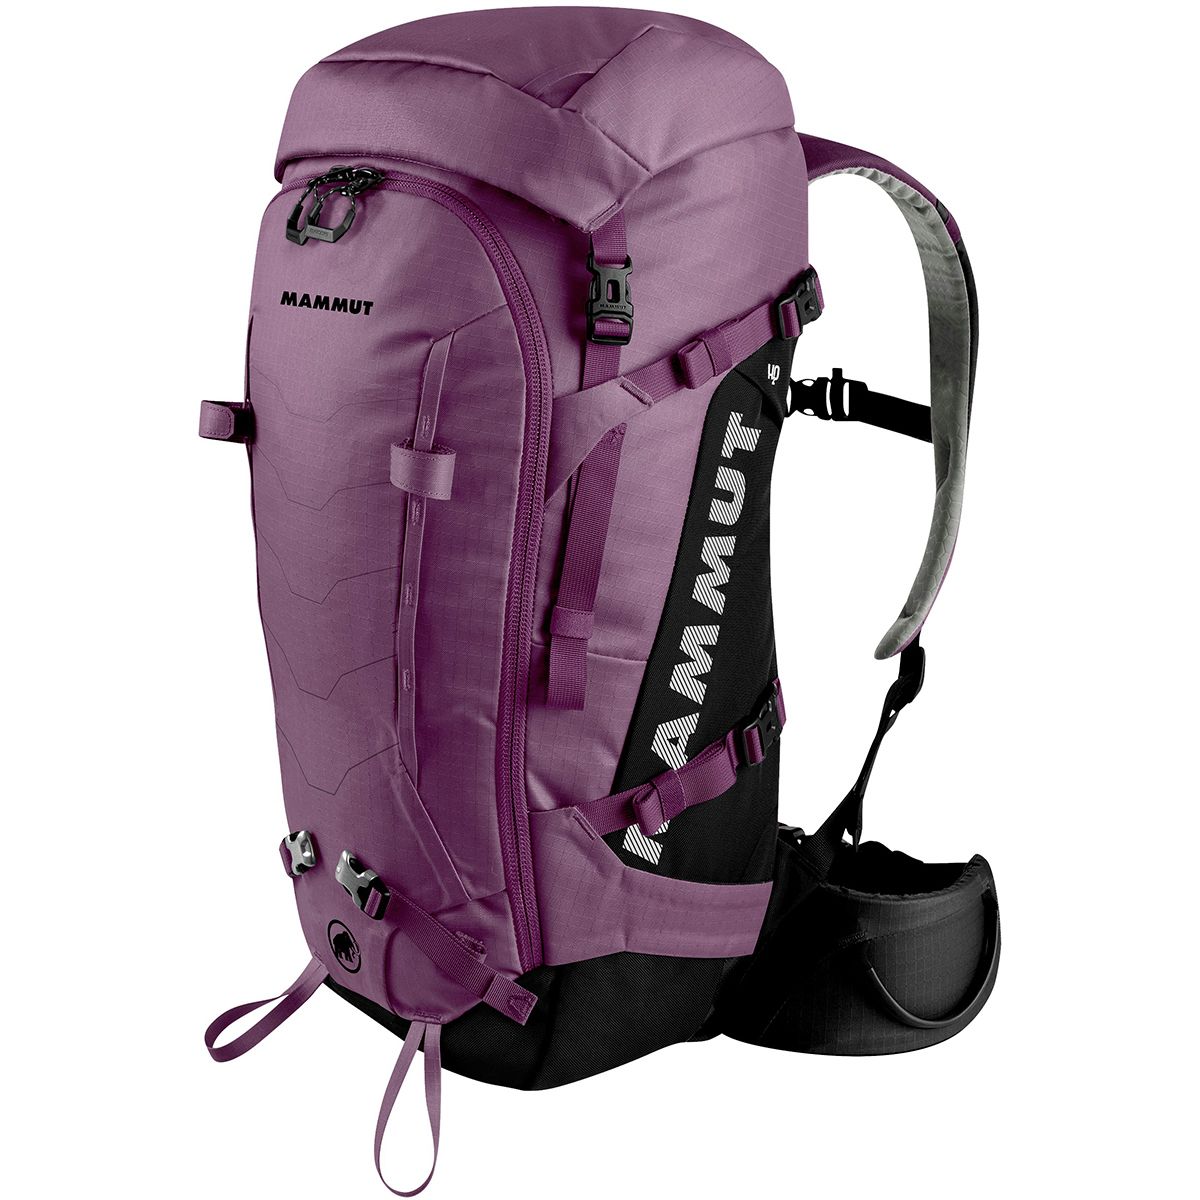 Accor Afgrond Kunstmatig Mammut Trea Spine 35L Backpack - Women's - Hike & Camp